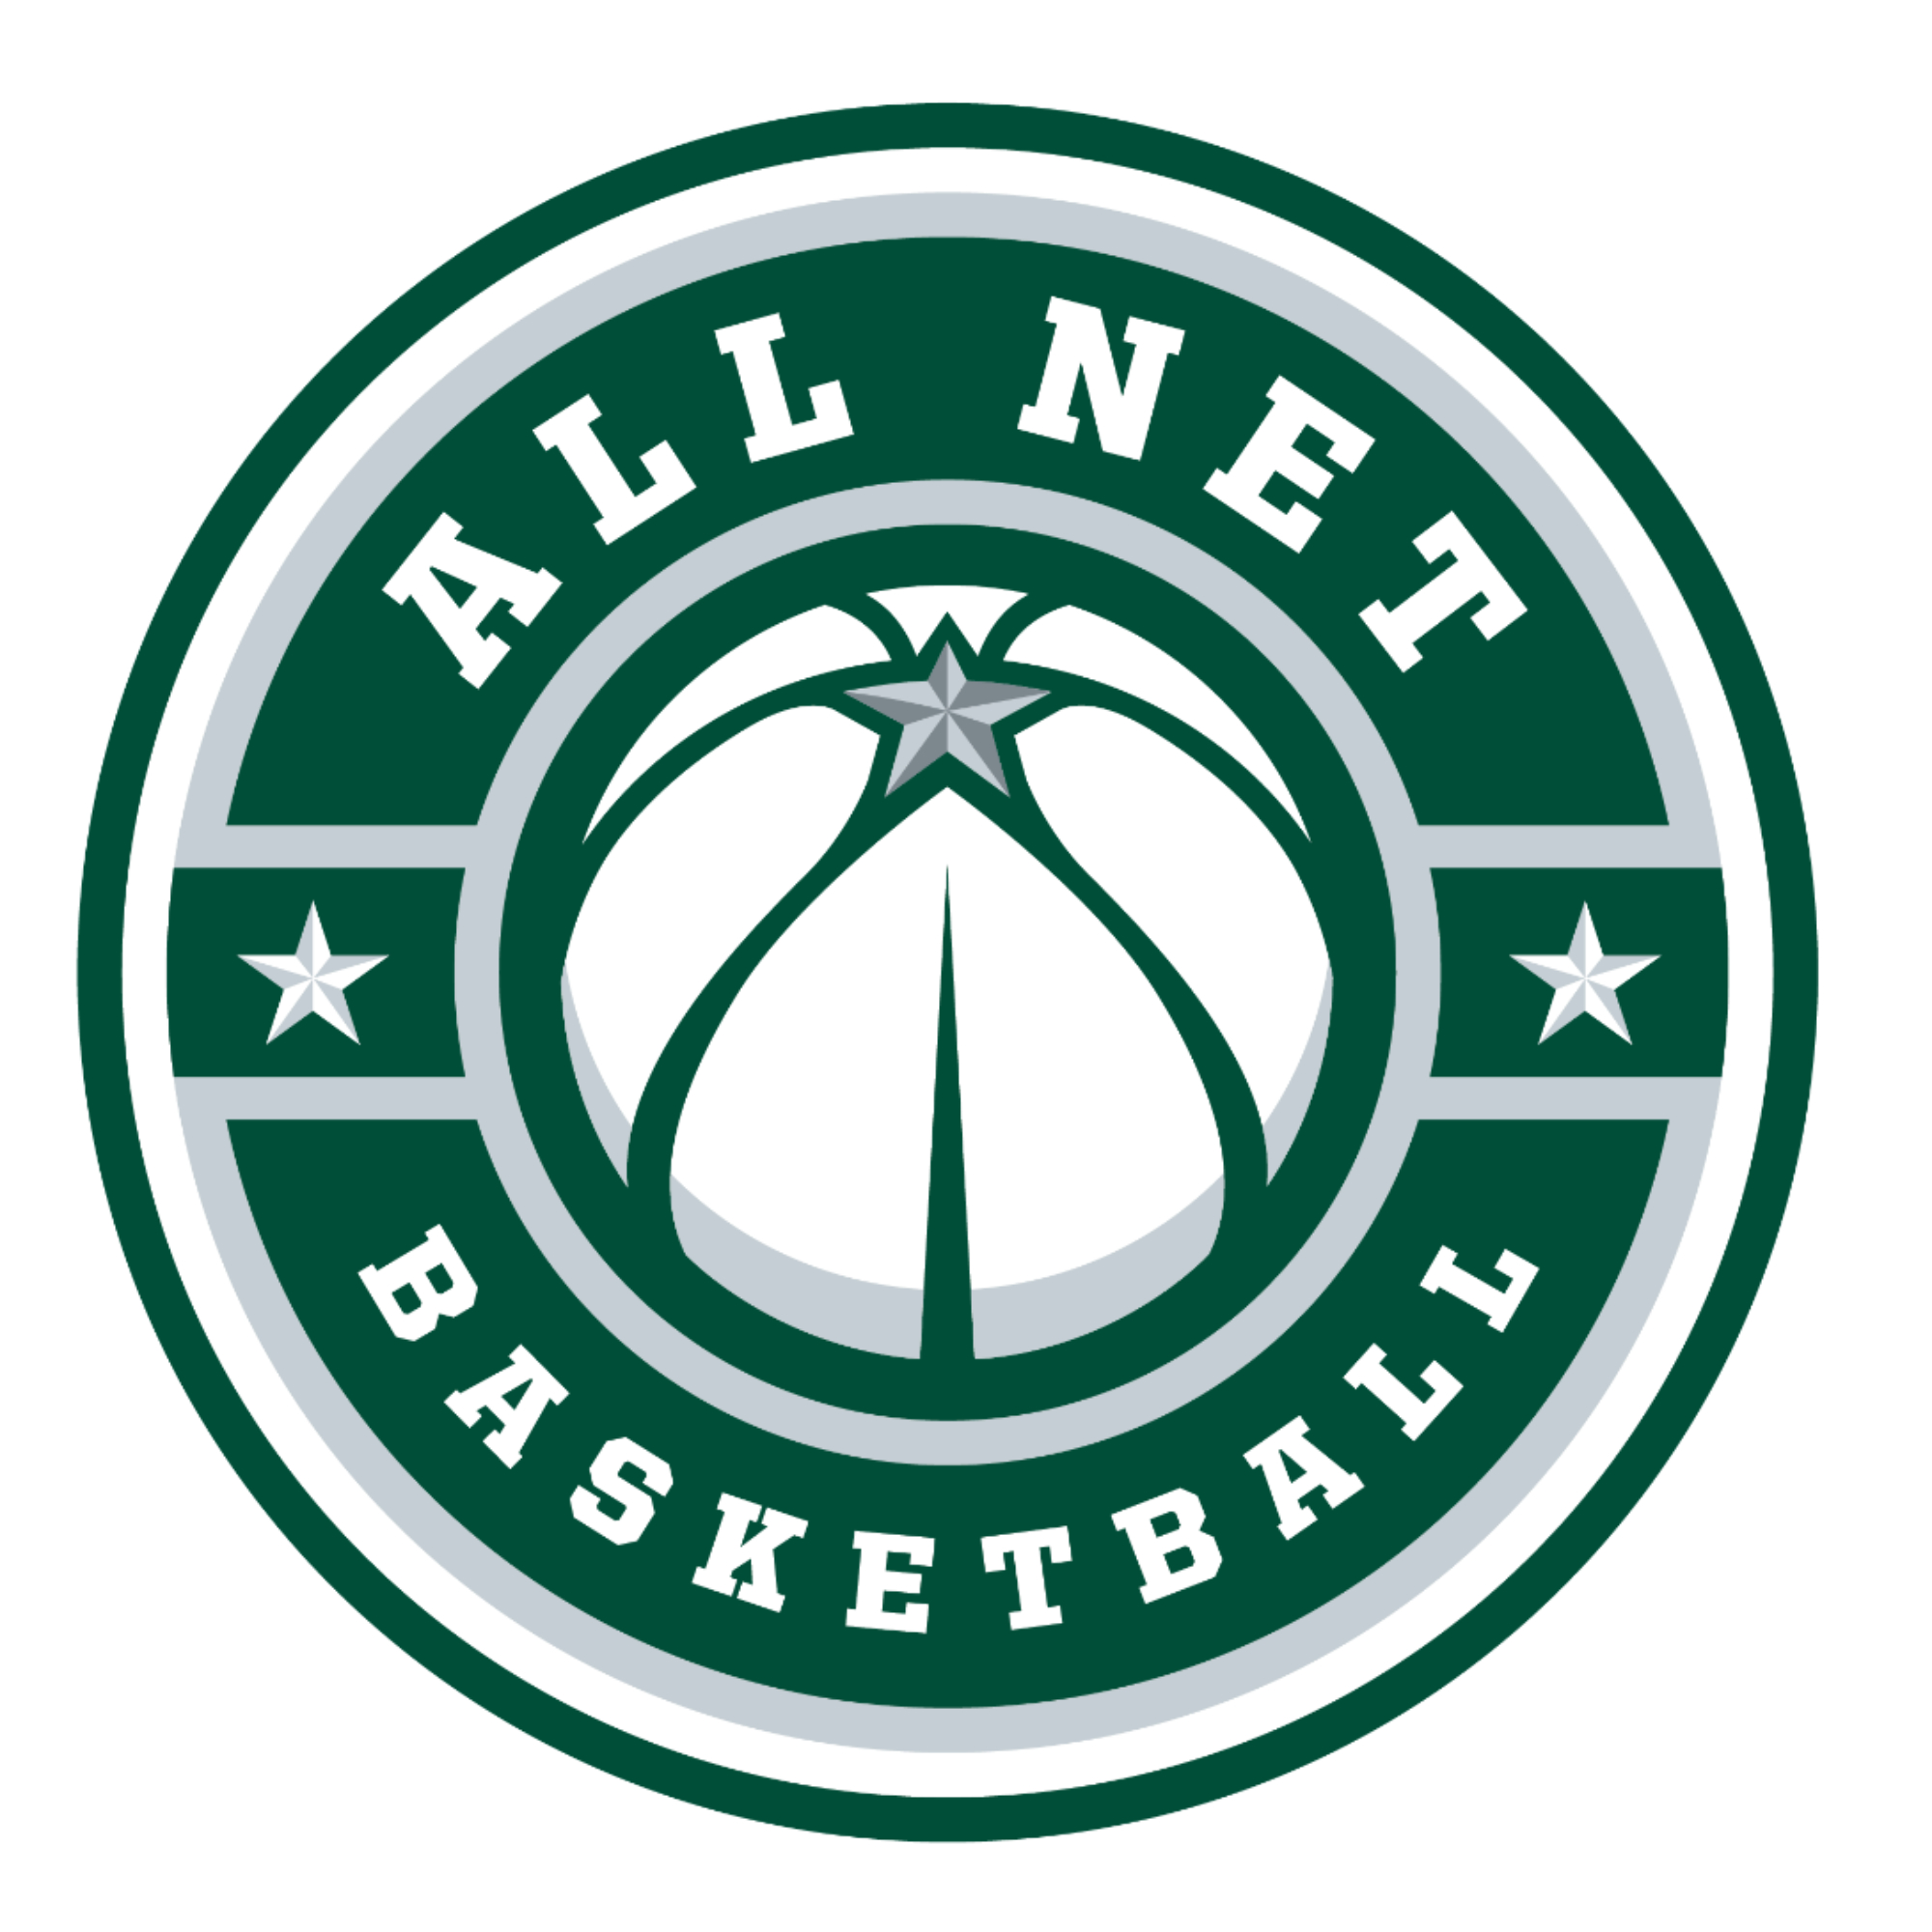 All Net Basketball Club 17U 